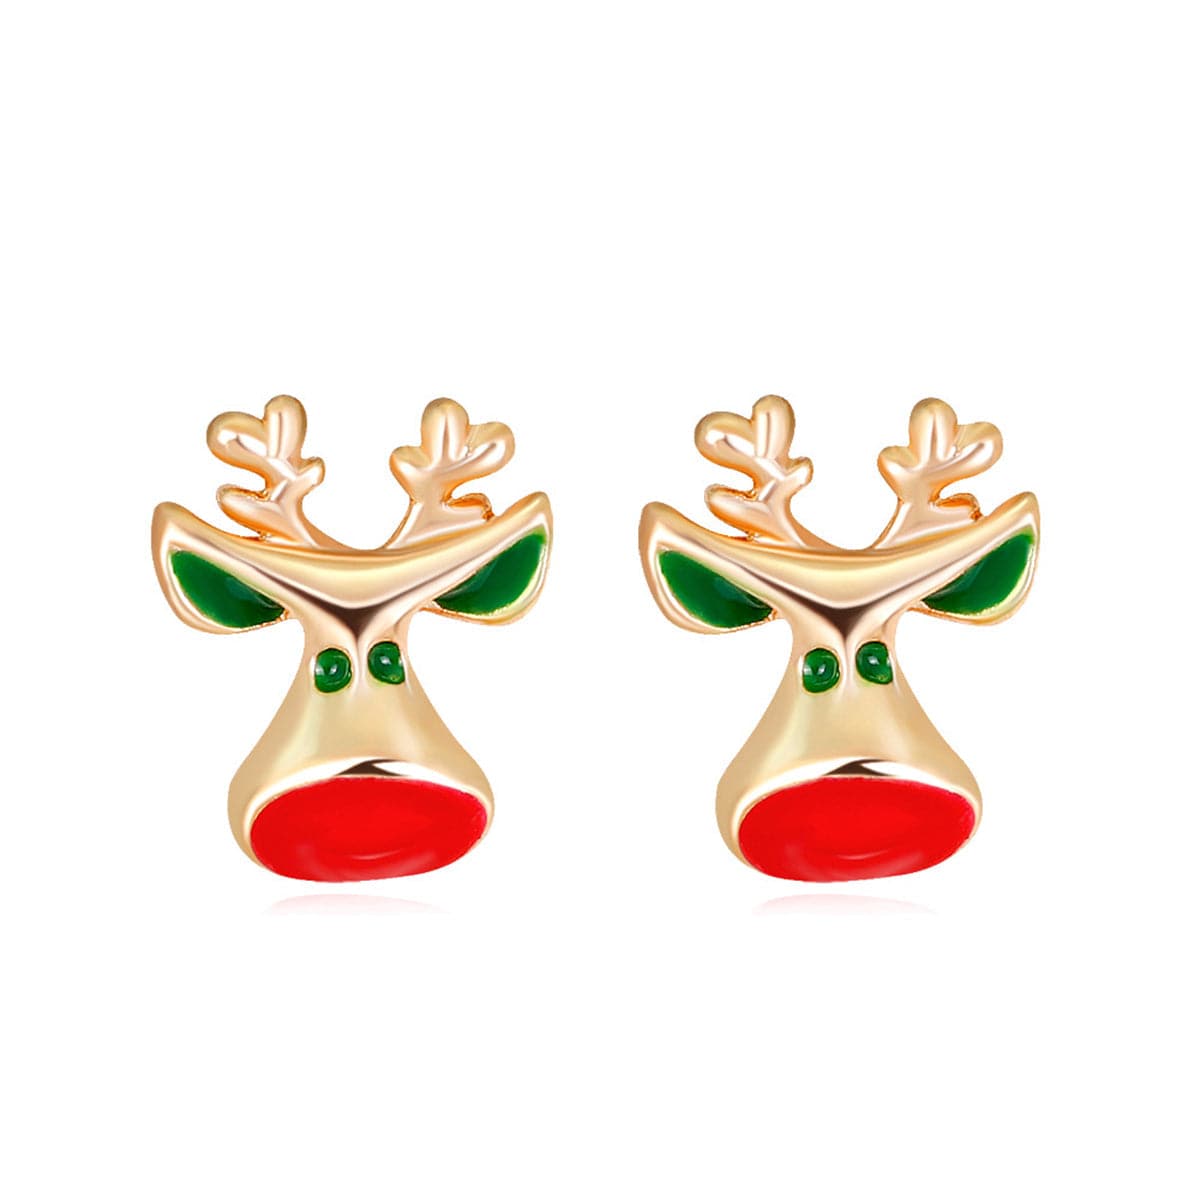 Red Enamel & 18K Gold-Plated Reindeer Head Stud Earrings